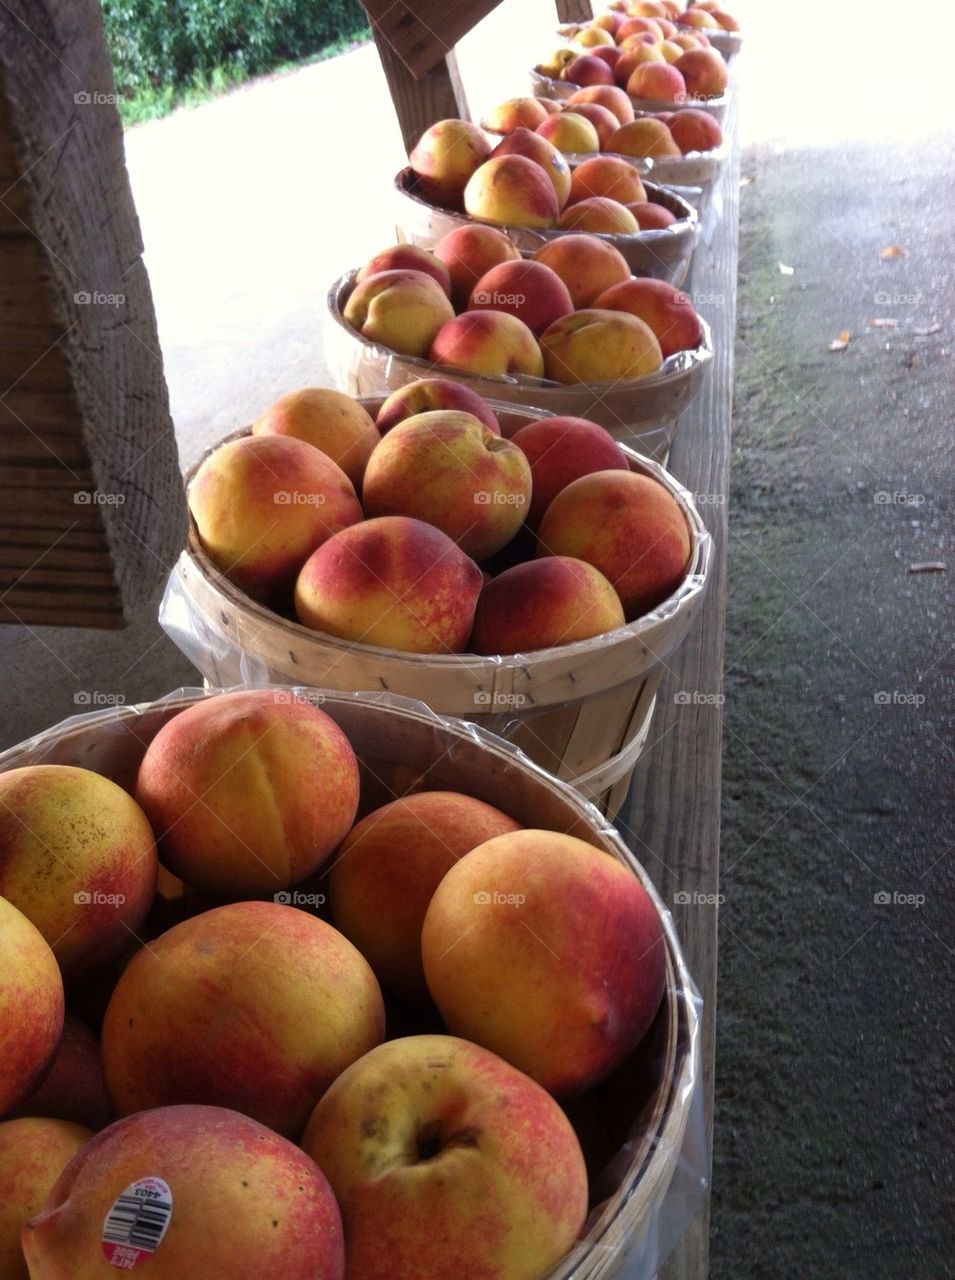 Farmstand peaches